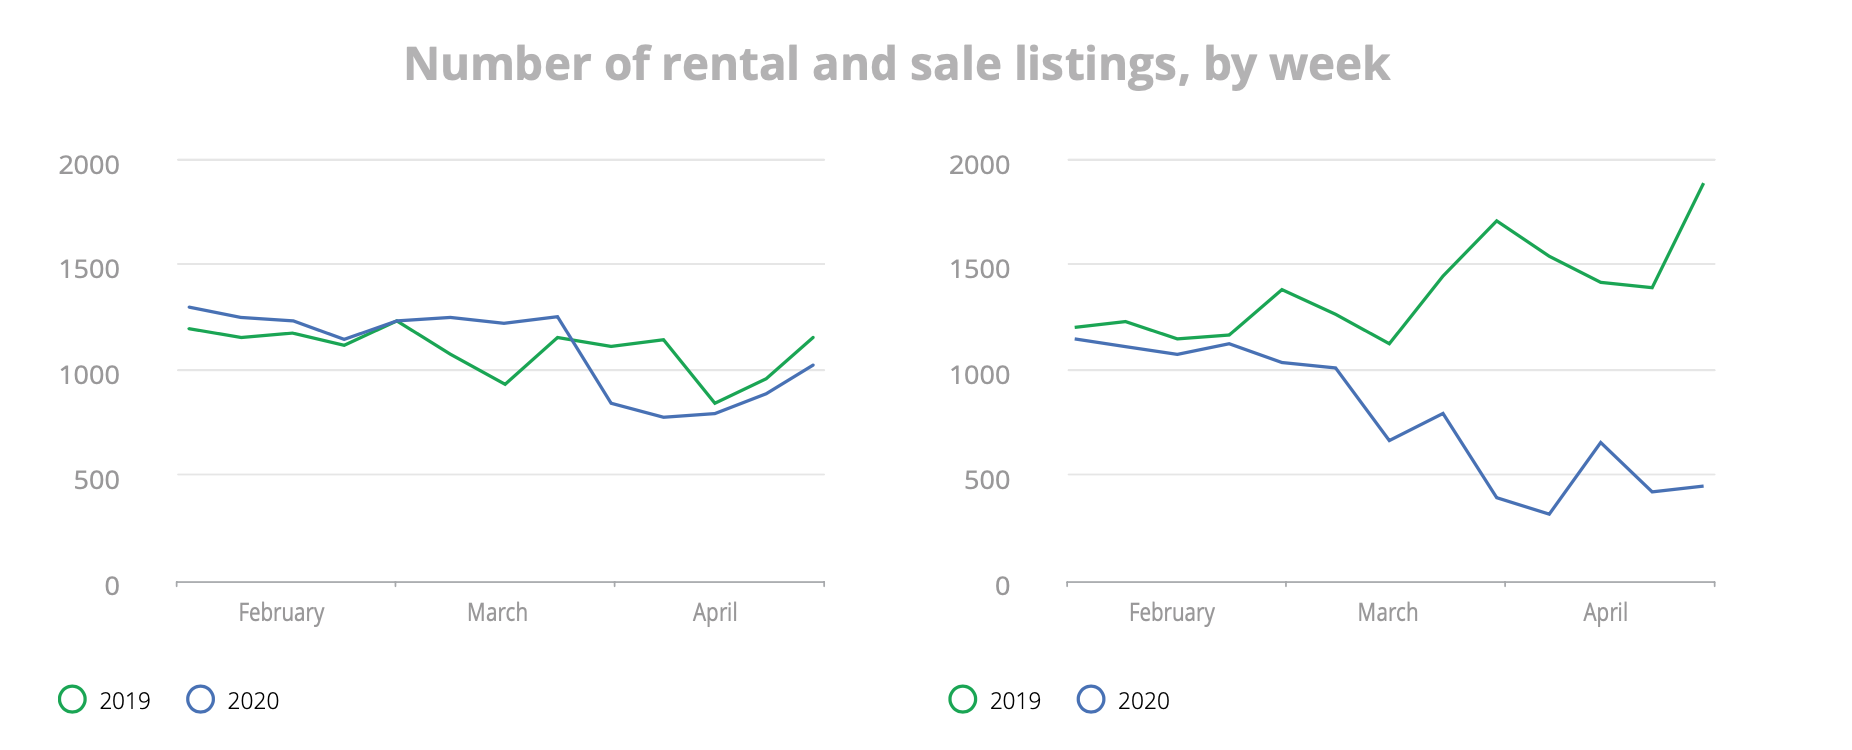 Number of rental and sale listings by week